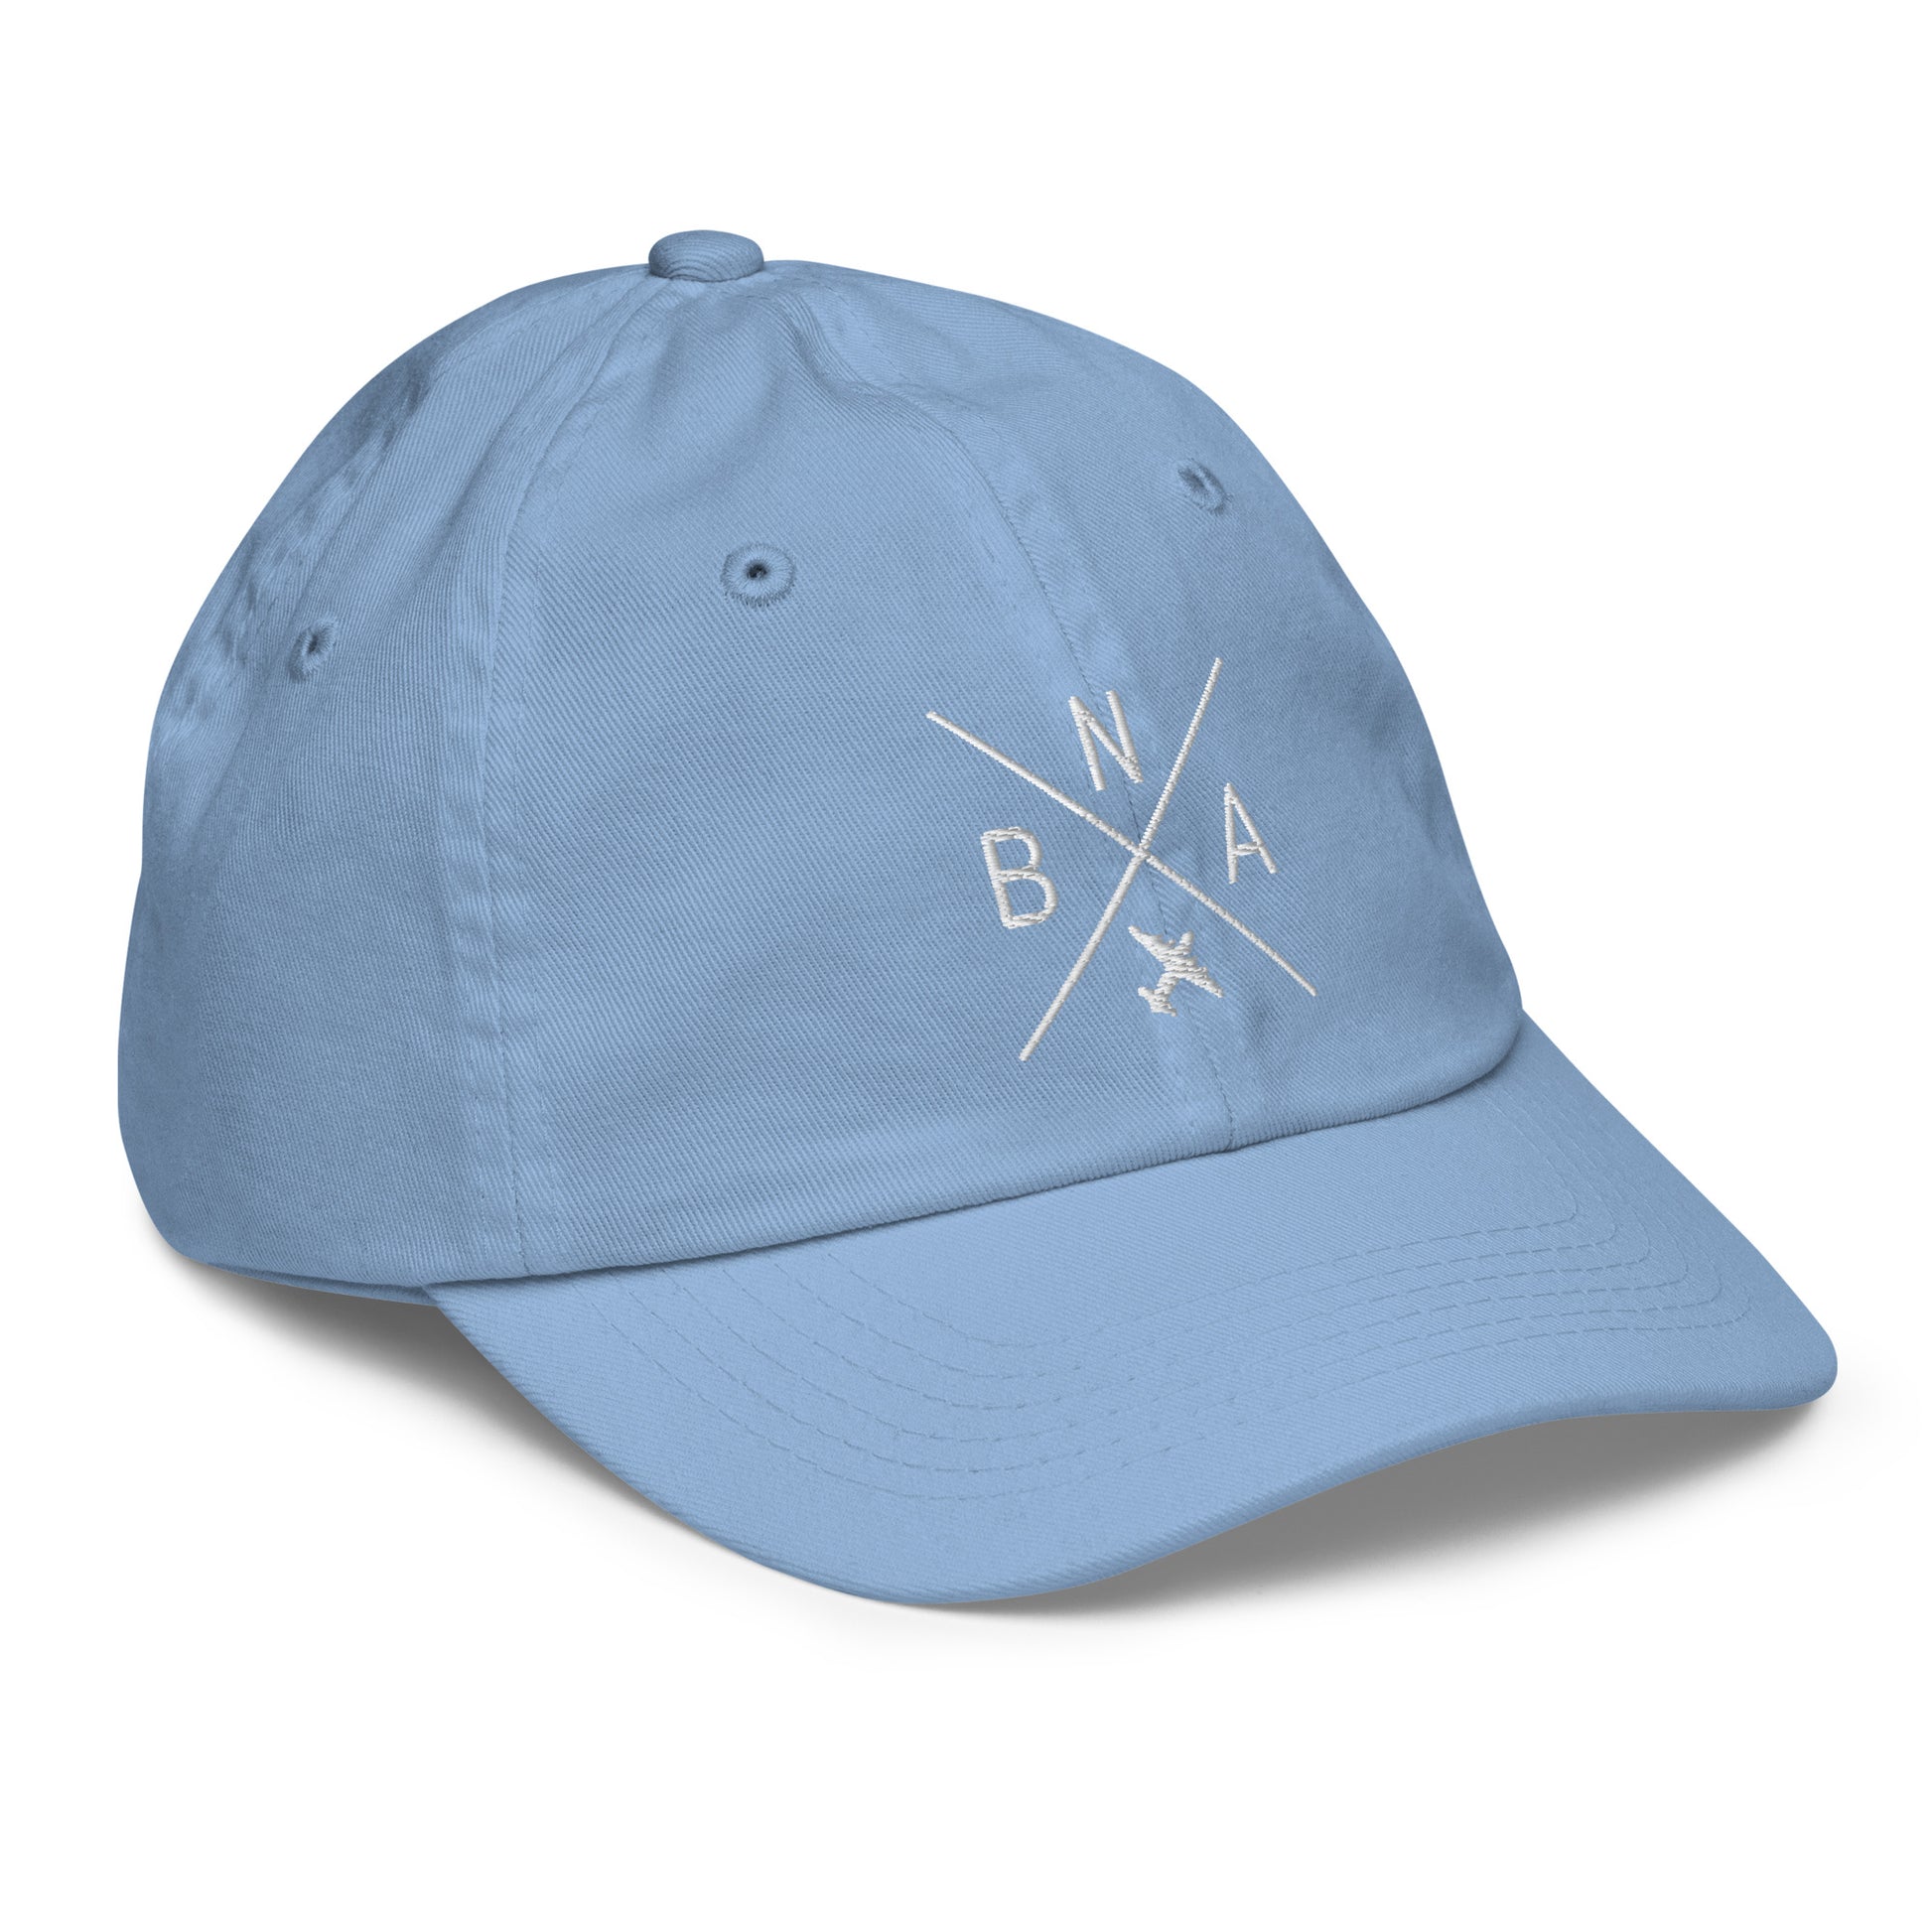 Crossed-X Kid's Baseball Cap - White • BNA Nashville • YHM Designs - Image 23